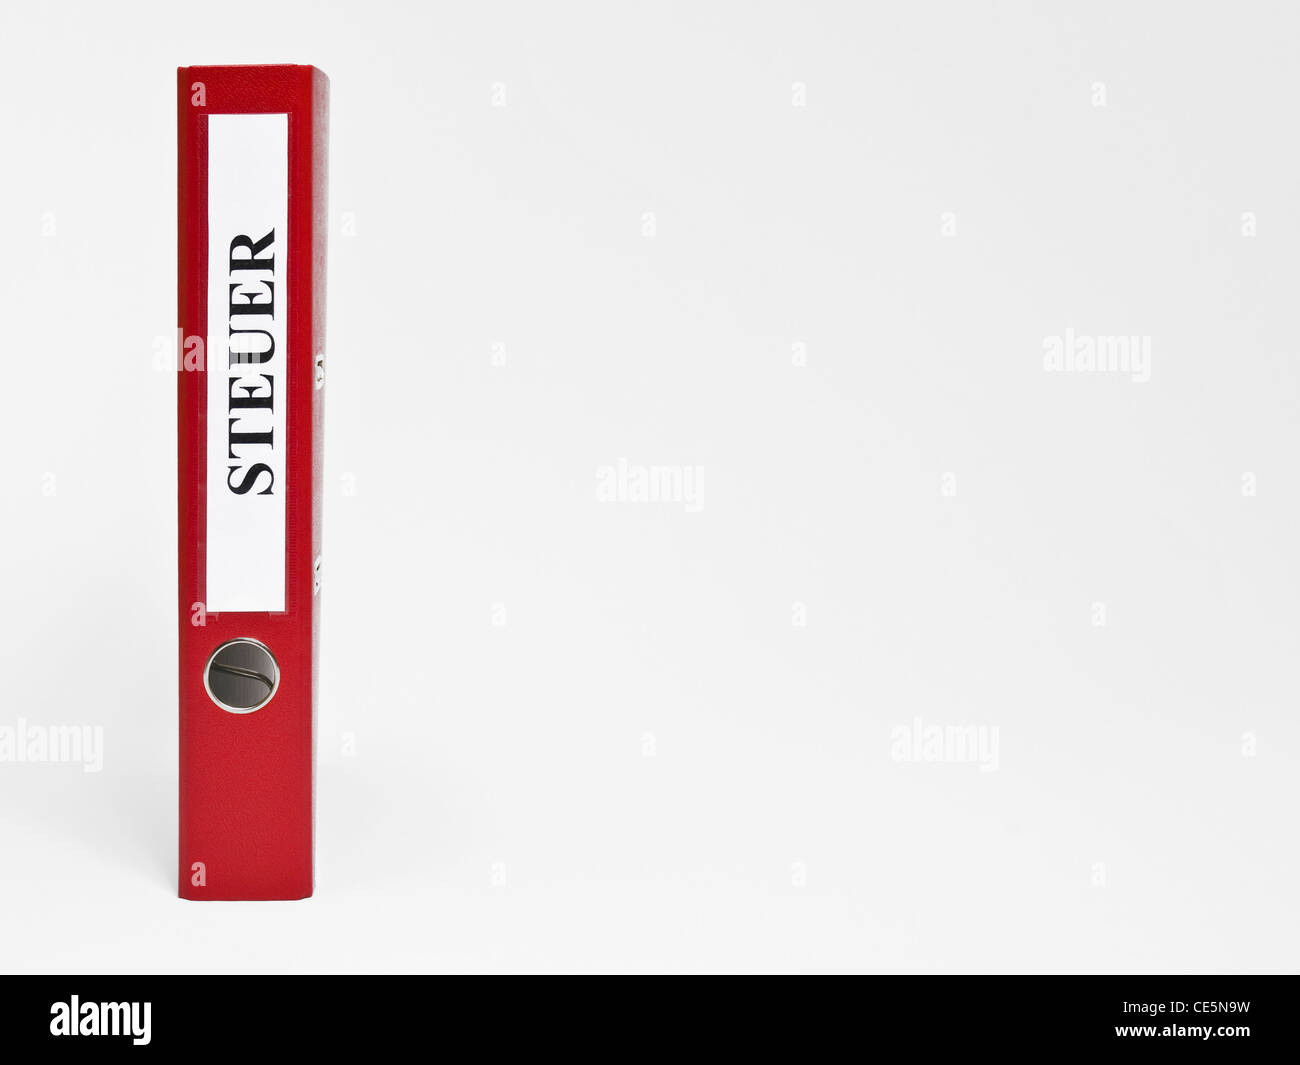 Ein stehender roter Aktenordner mit der Aufschrift 'Steuer' | un file rosso in posizione verticale con l'etichetta tedesca 'Steuer'(imposta) Foto Stock